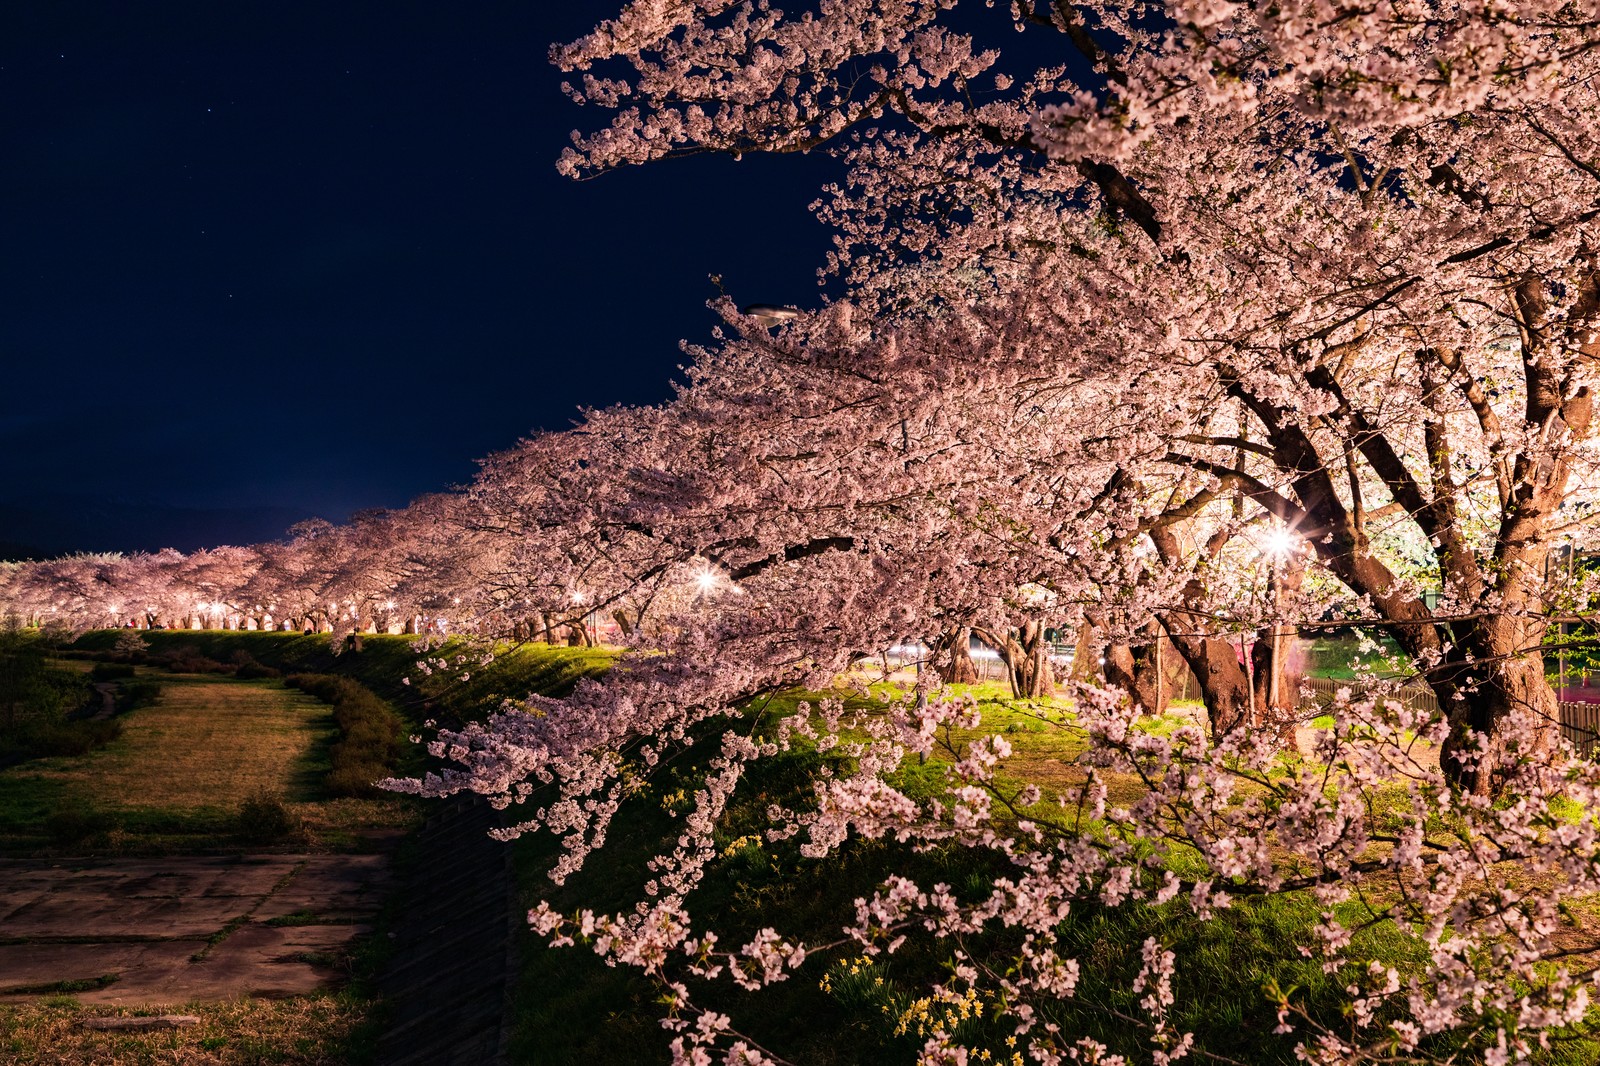 年外濠公園桜の見頃と開花状況は ライトアップとボートの時間 レストランも紹介 Suguri Journal